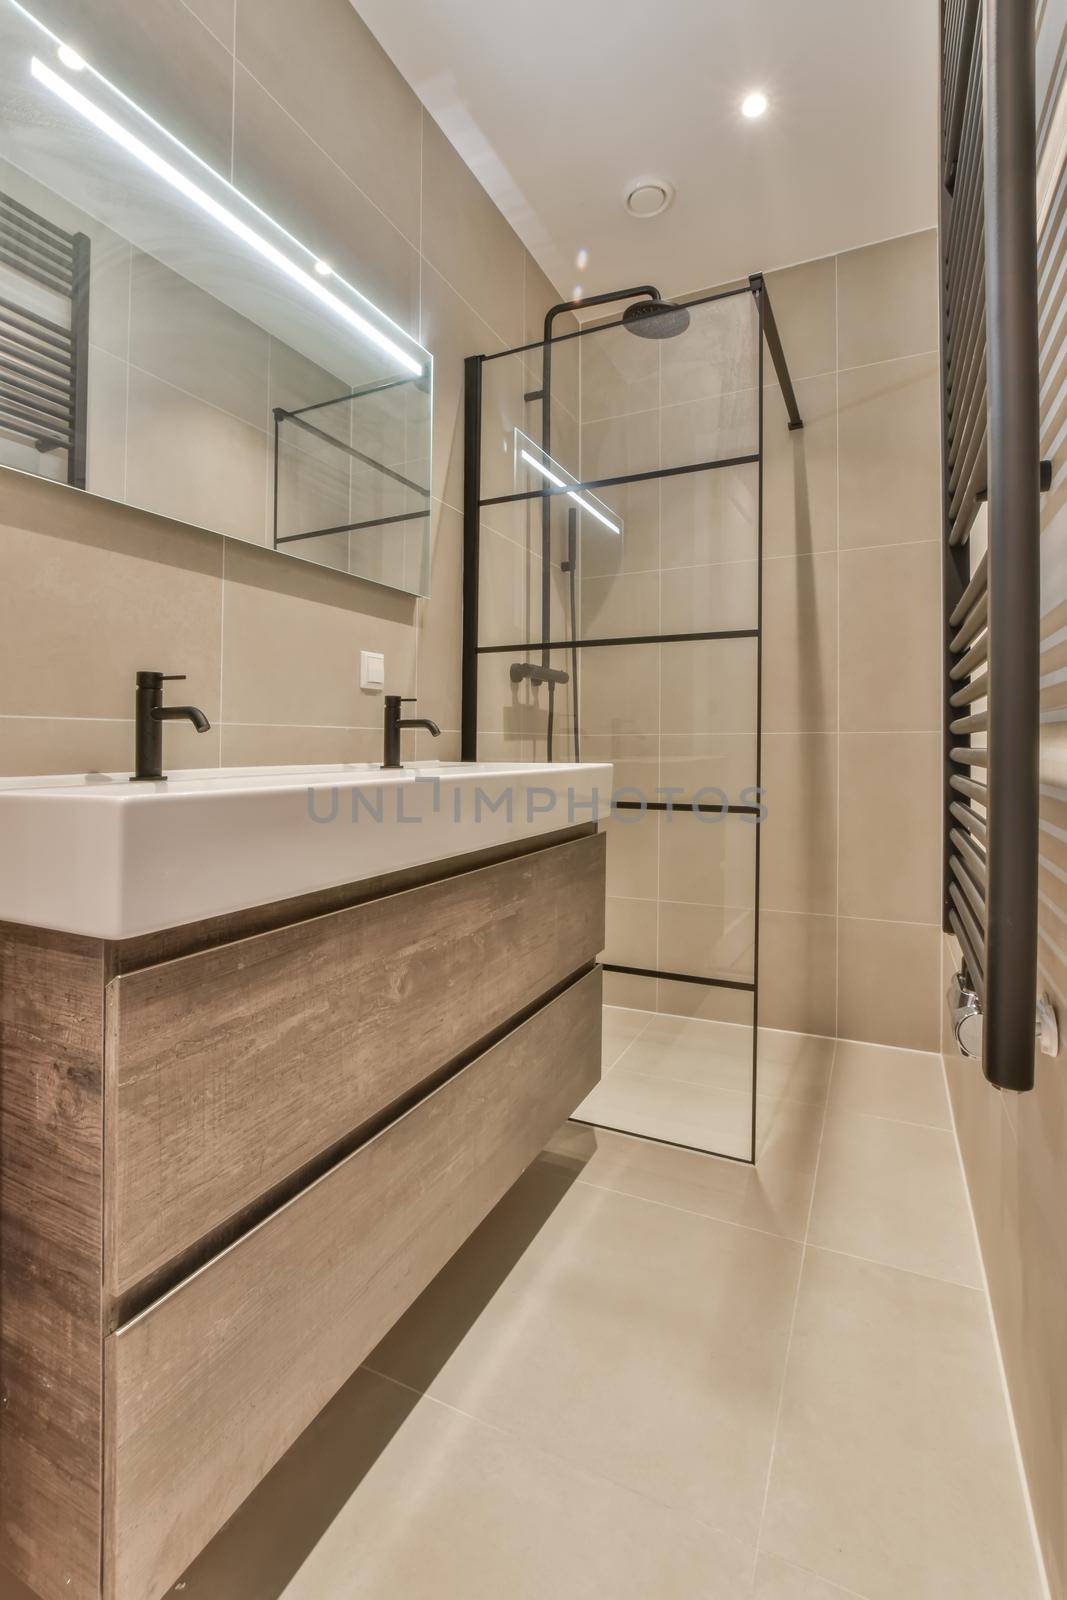 Stylish bathroom in a minimalist style by casamedia